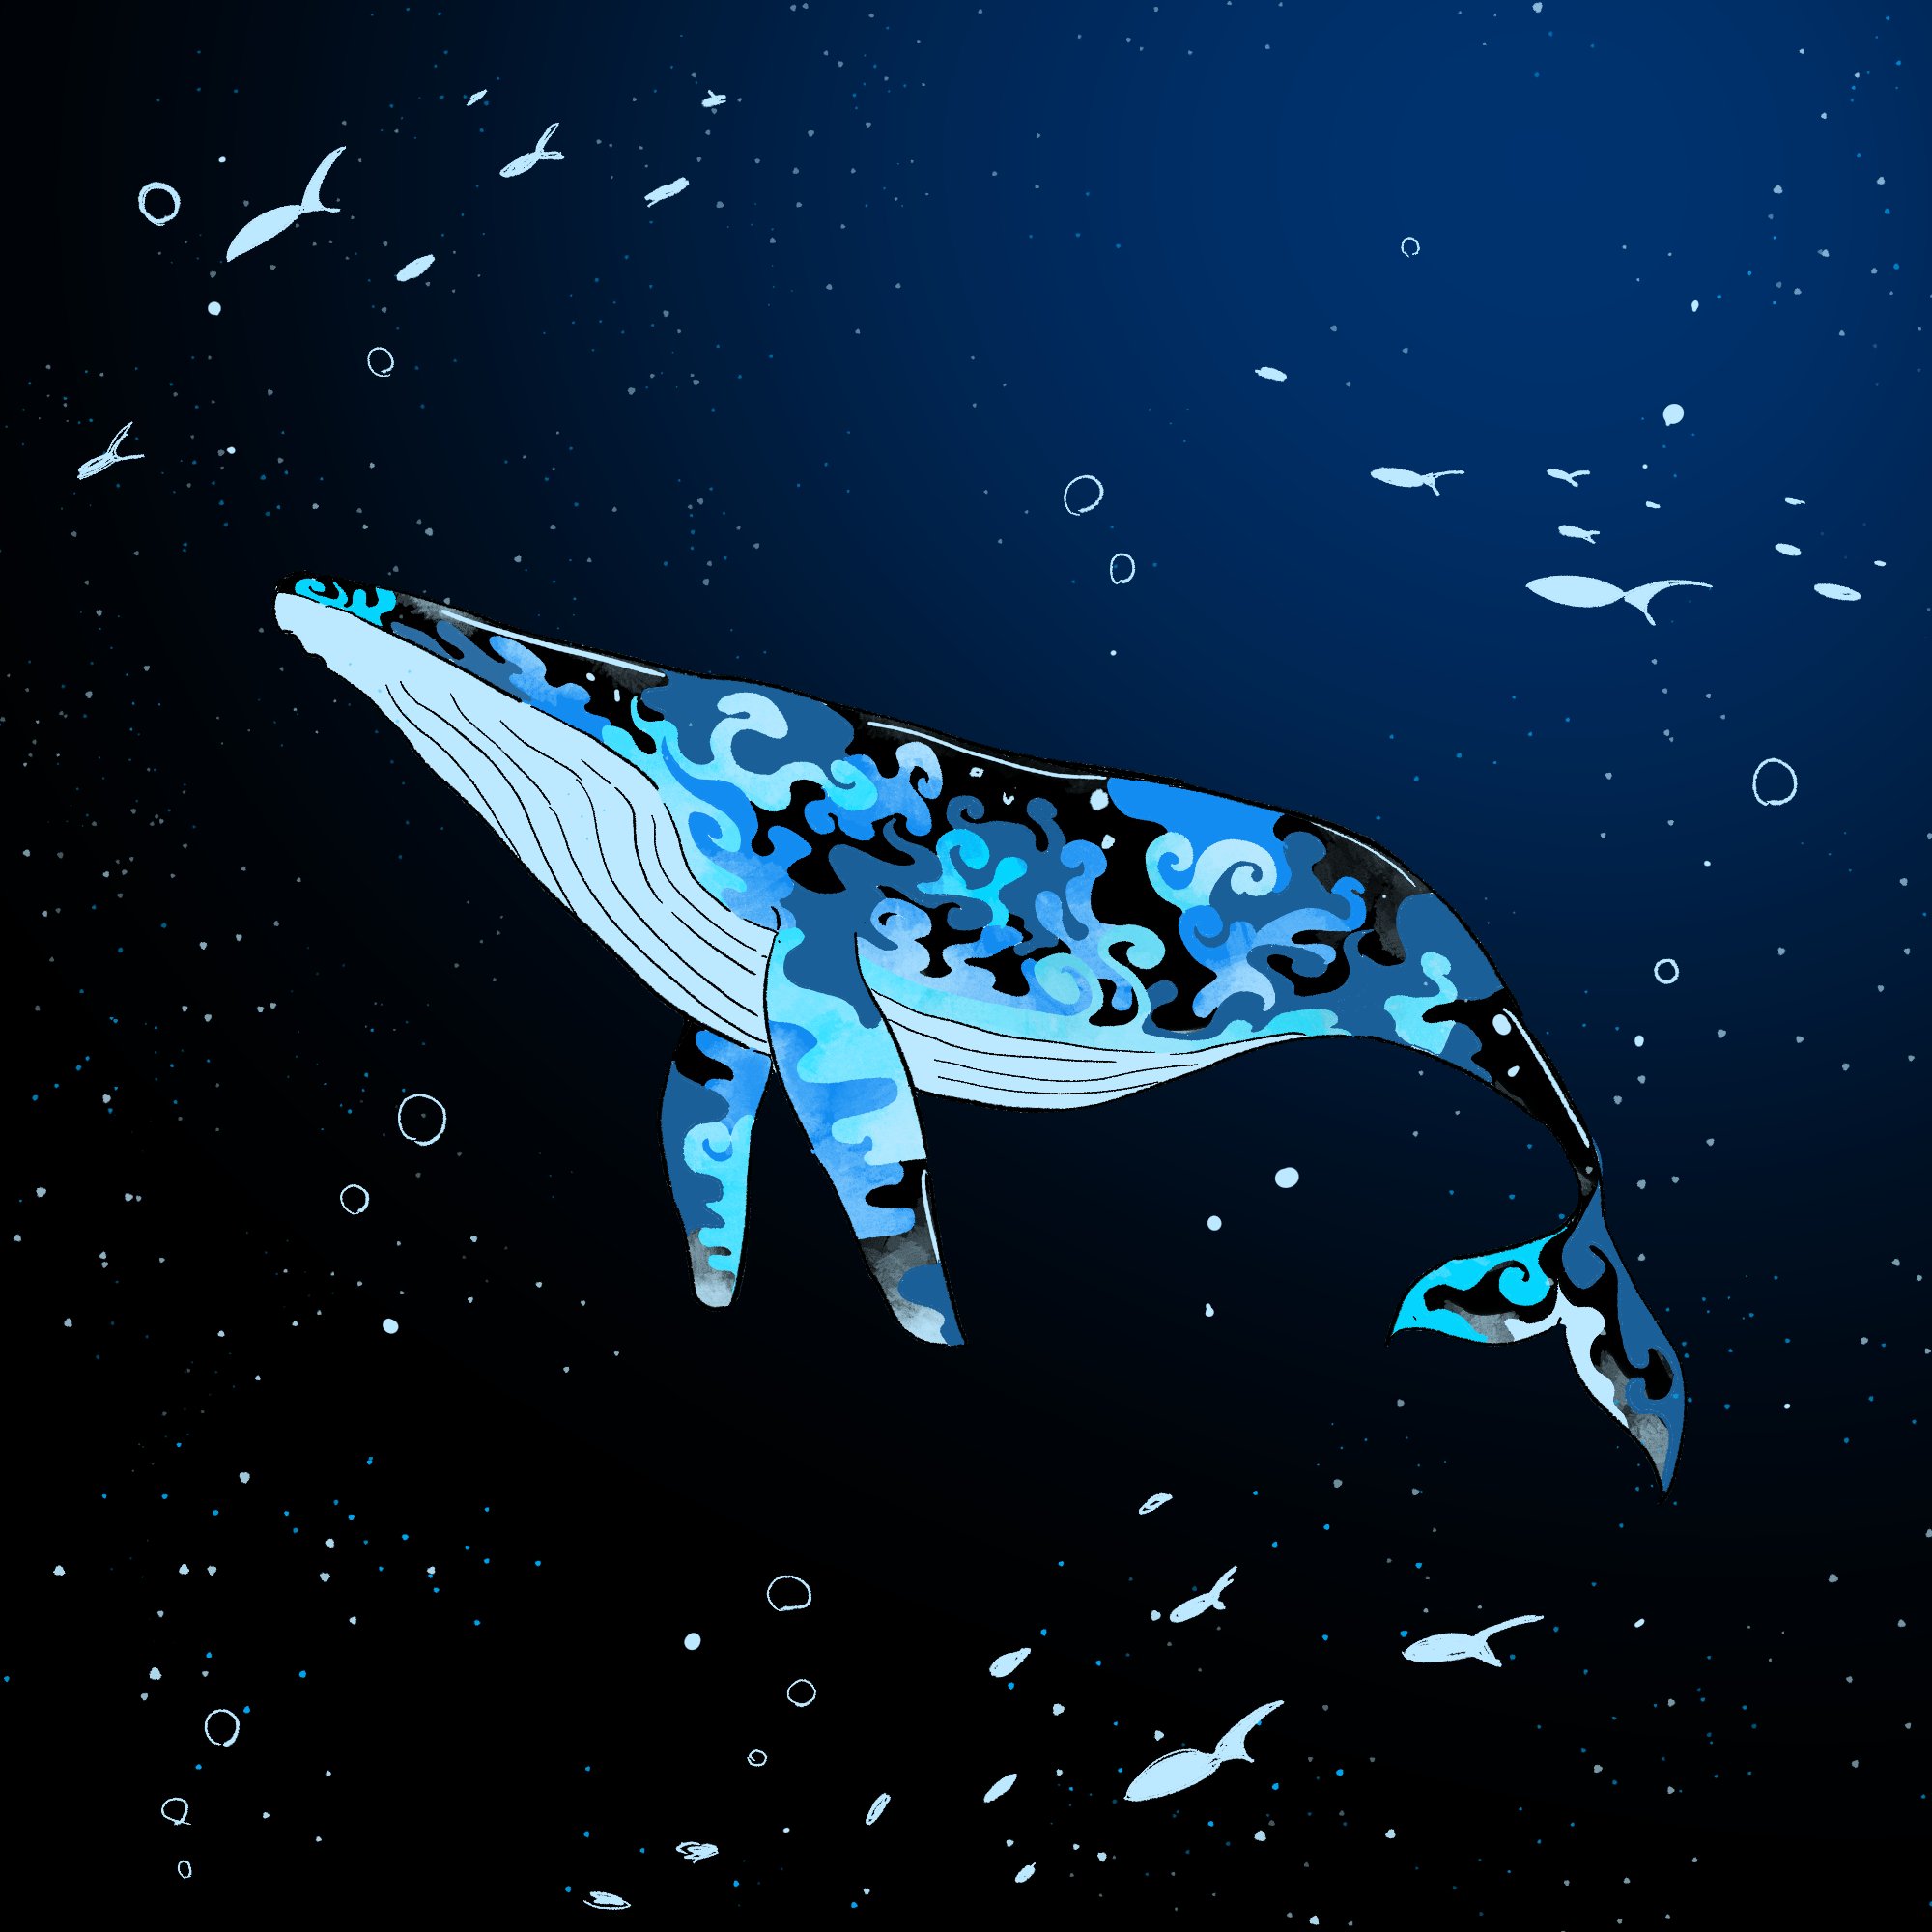 かずのこ 千の海を知る鯨 イラスト T Co Qrbvuskfqm Twitter